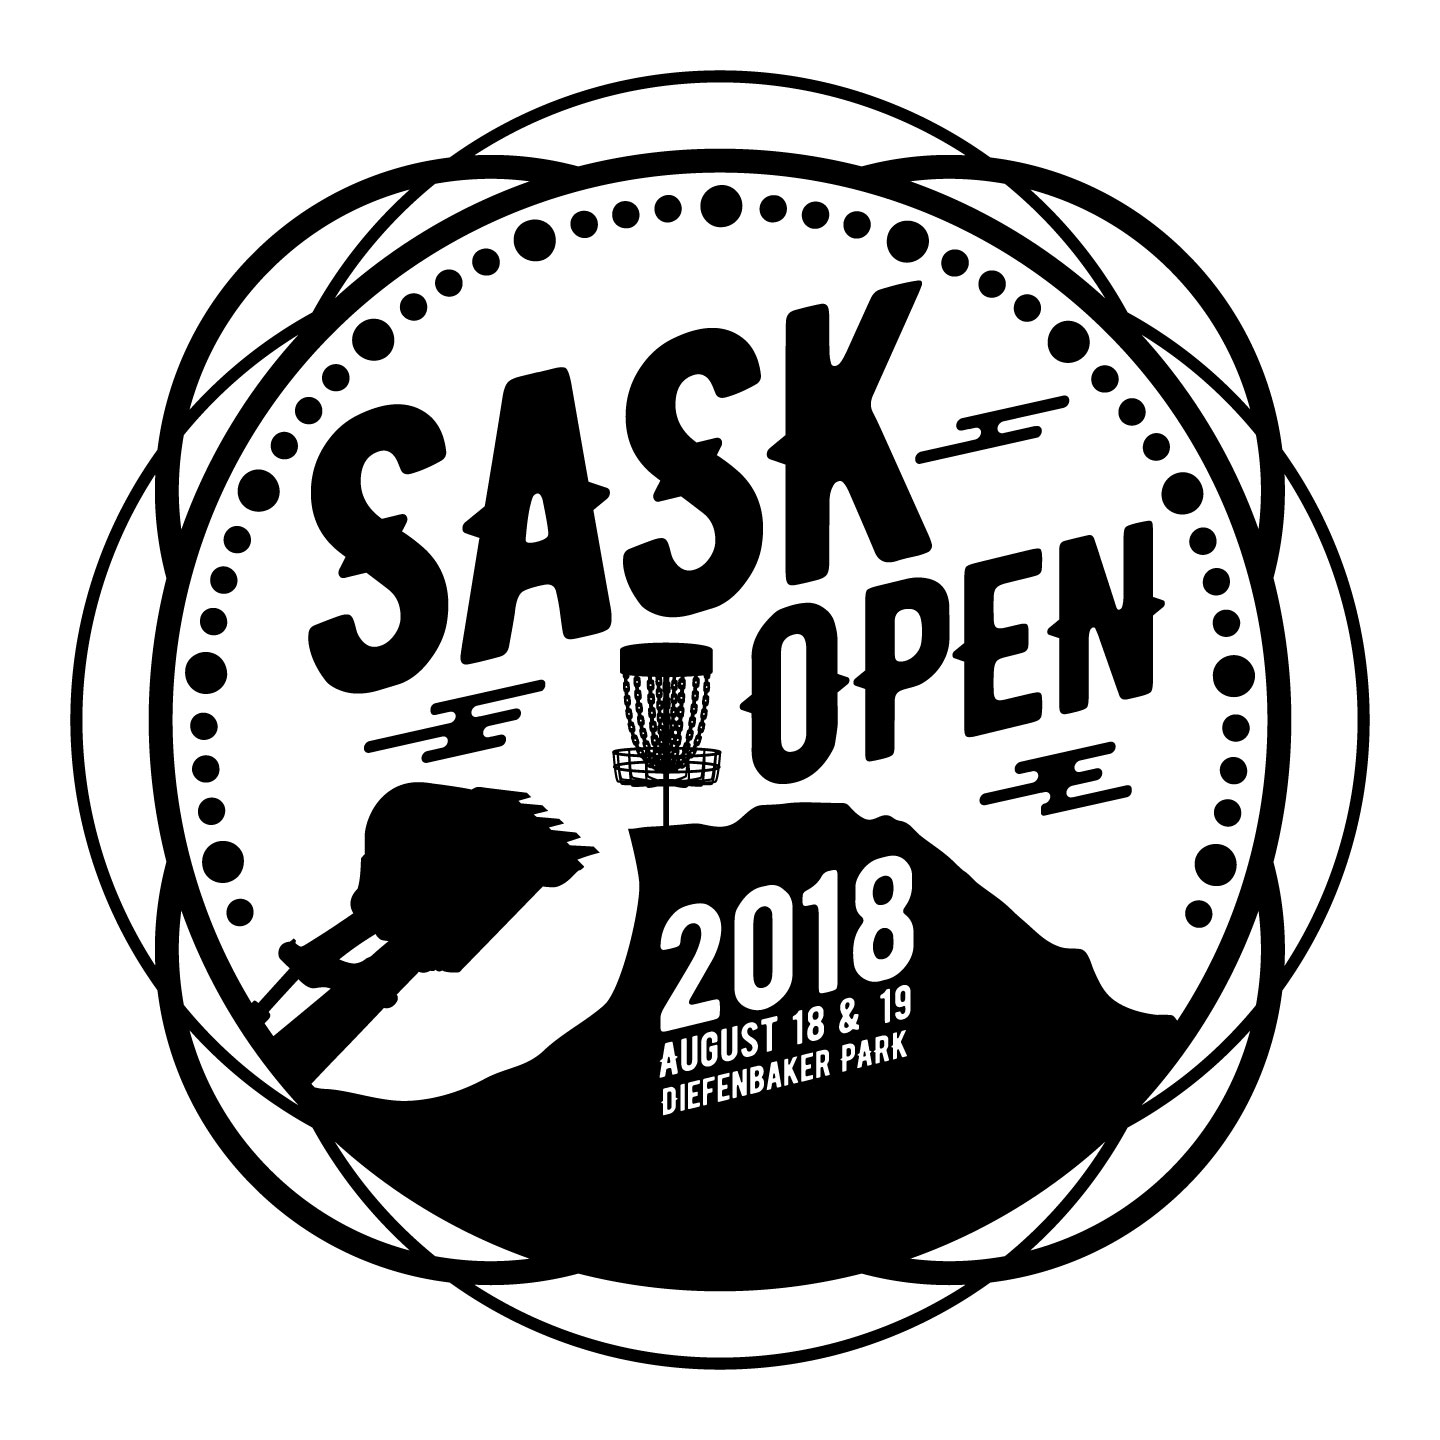 Saskatchewan Open